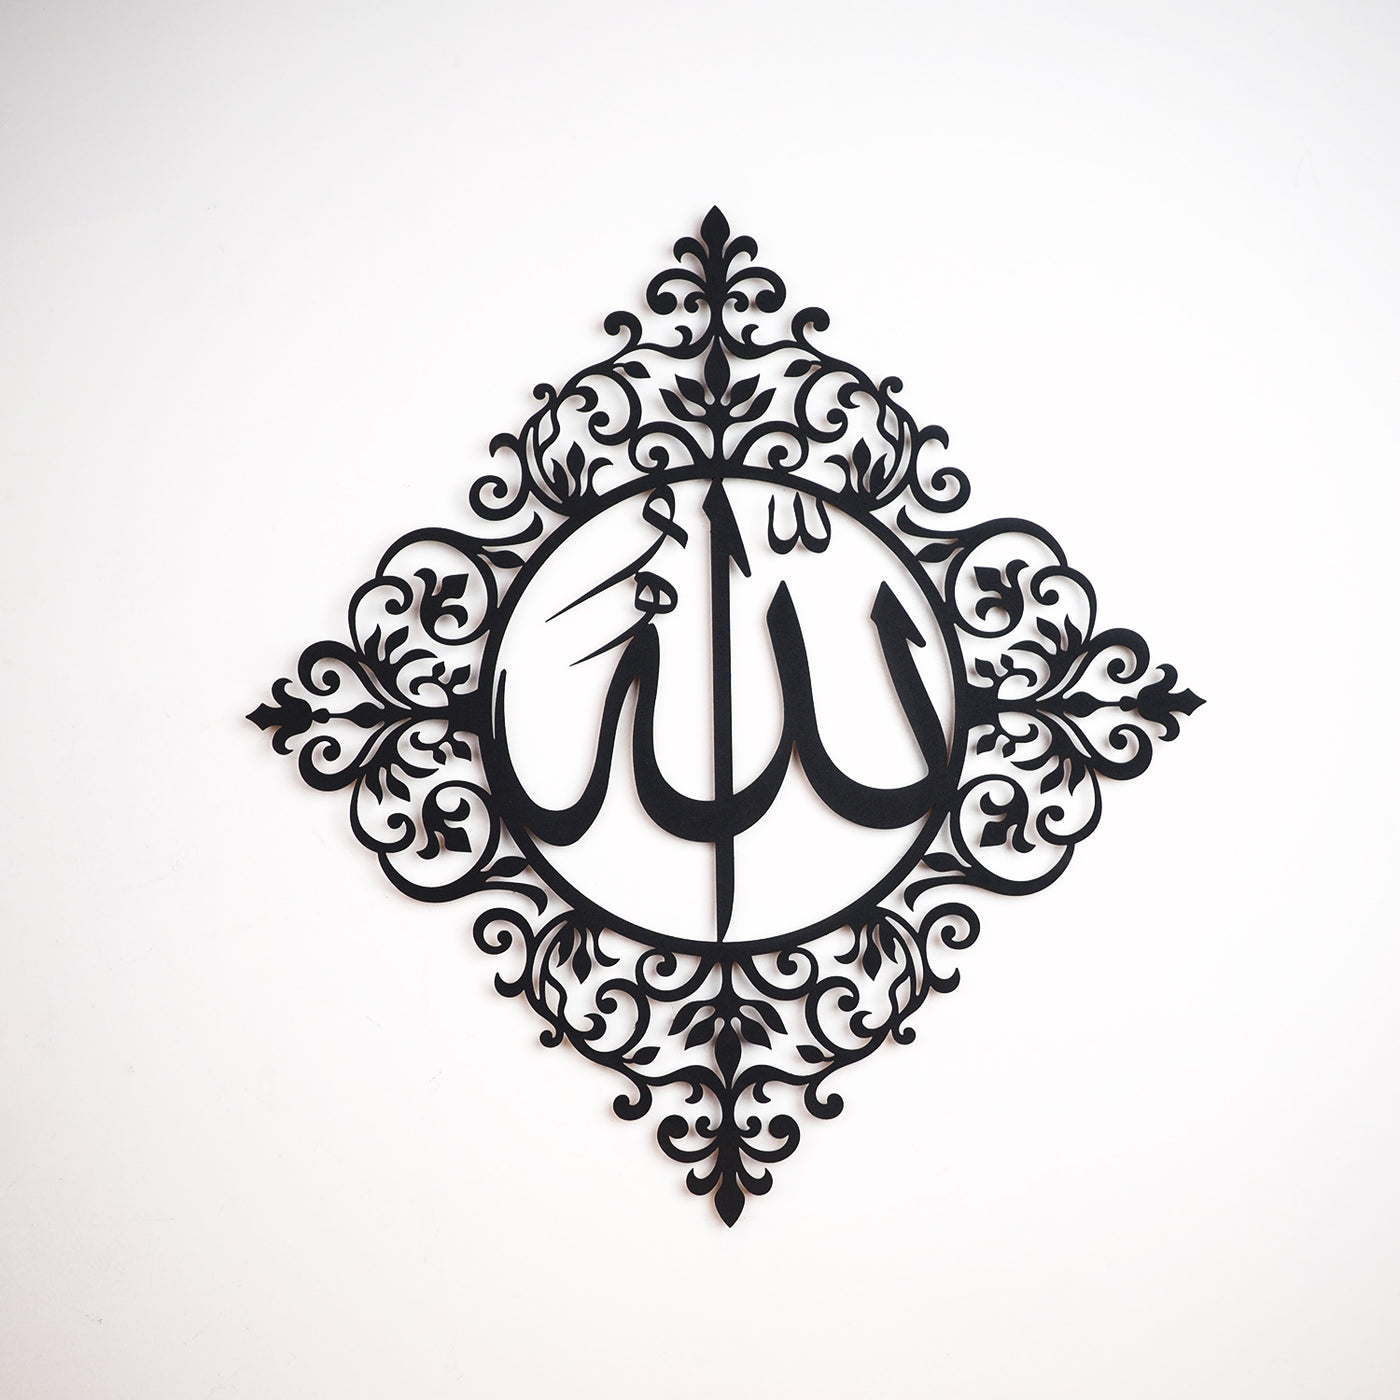 لوحة جدارية معدنية بزخرفة إسلامي مكتوب داخلها( الله سبحانه وتعالى)  - WAM139